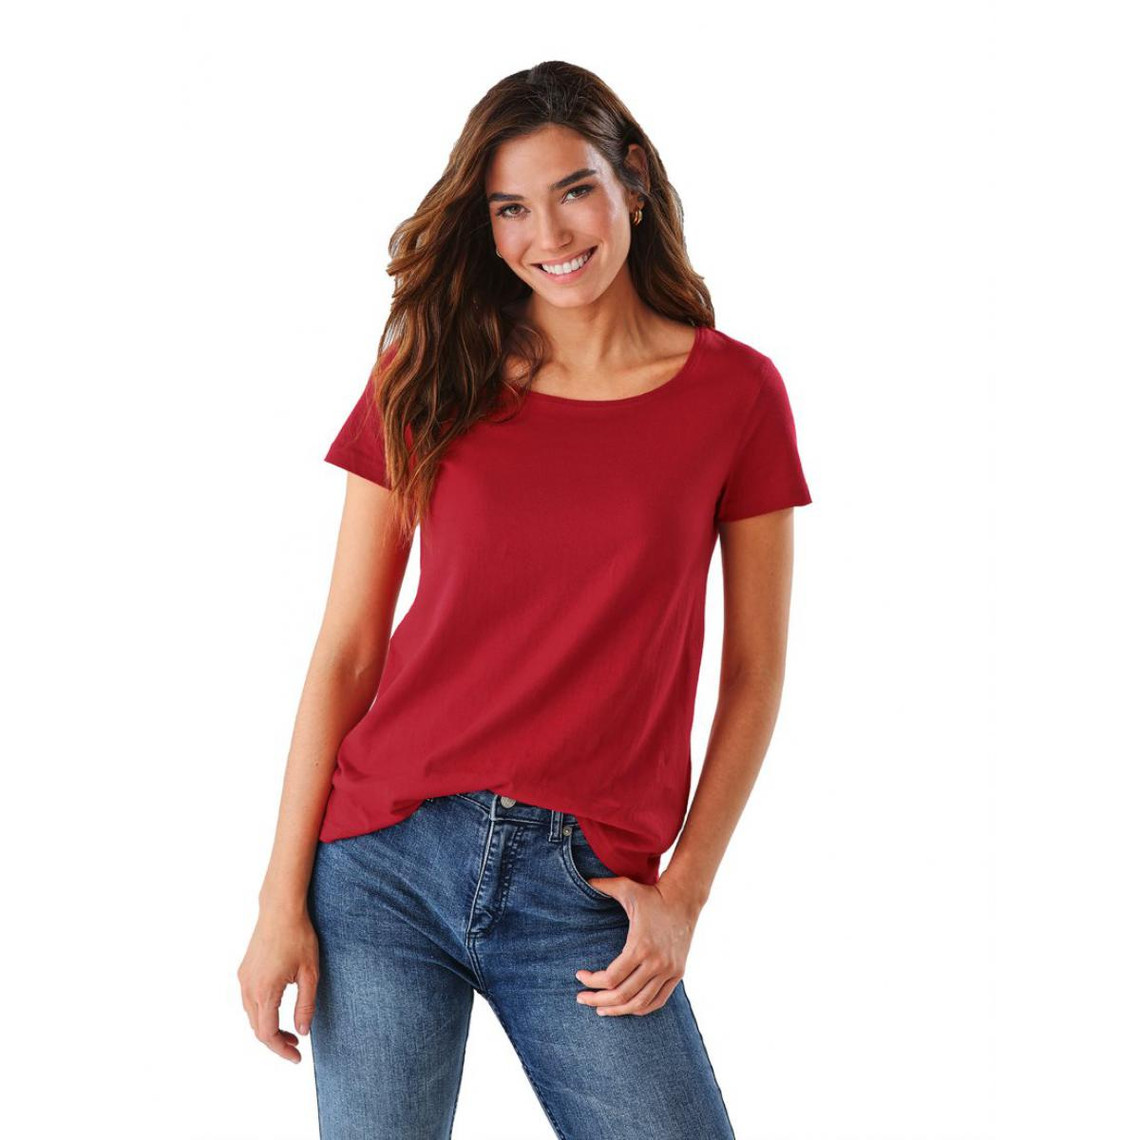 tee-shirt asymétrique fendu manches courtes femme rouge en coton